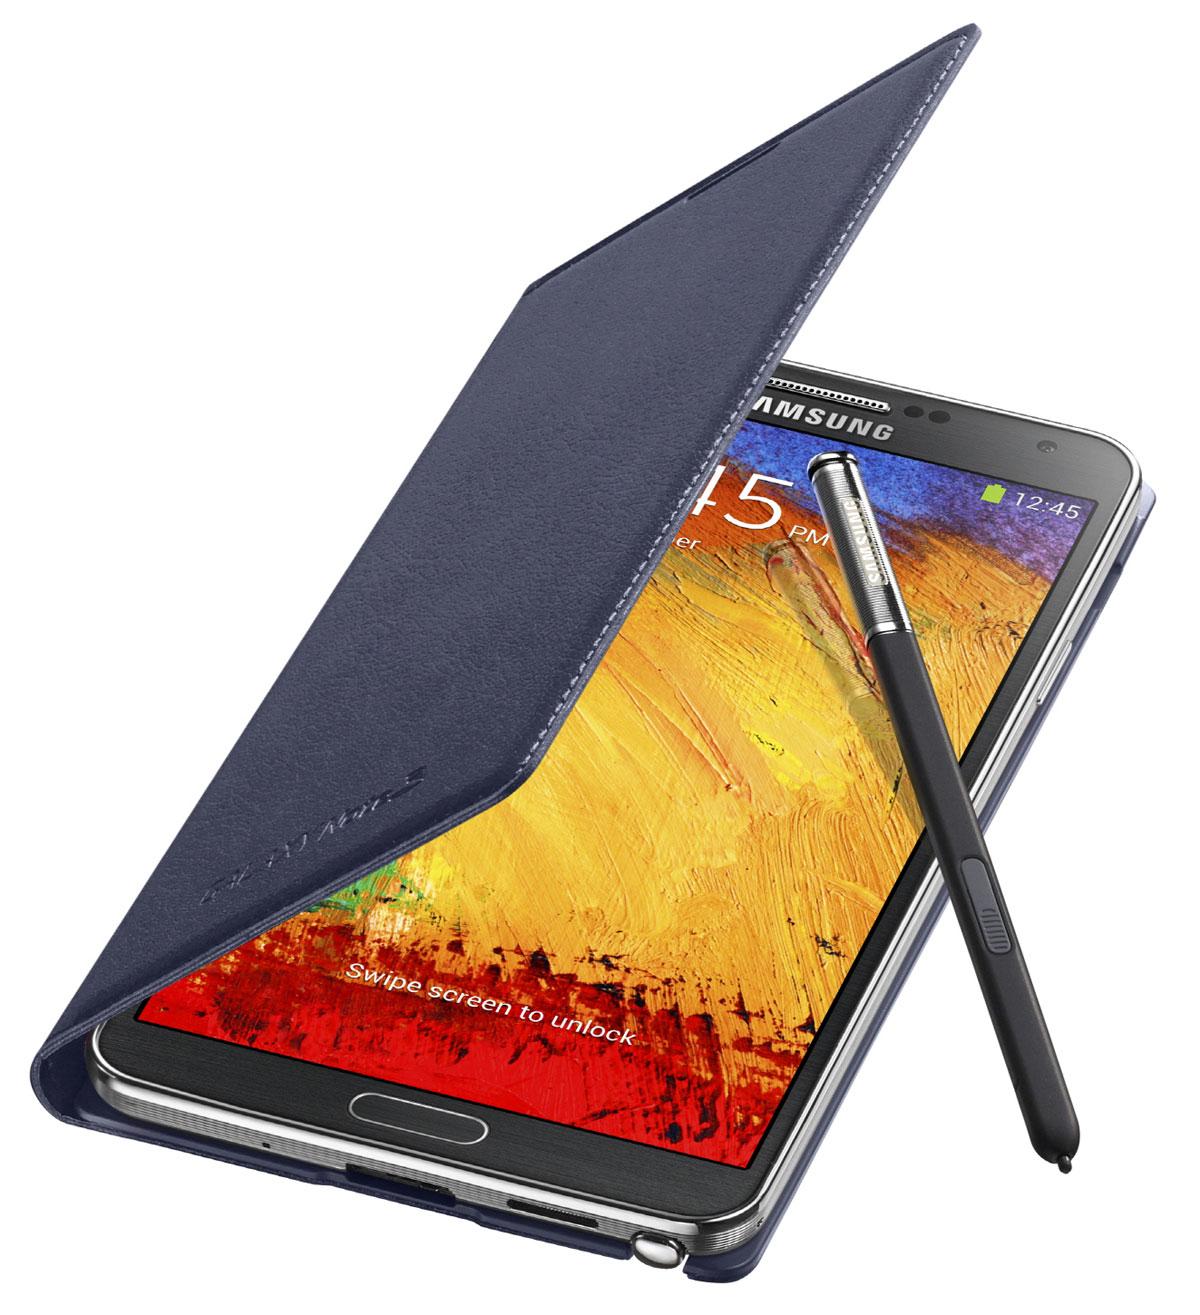 Samsung Galaxy Note 3 con la funda oficial